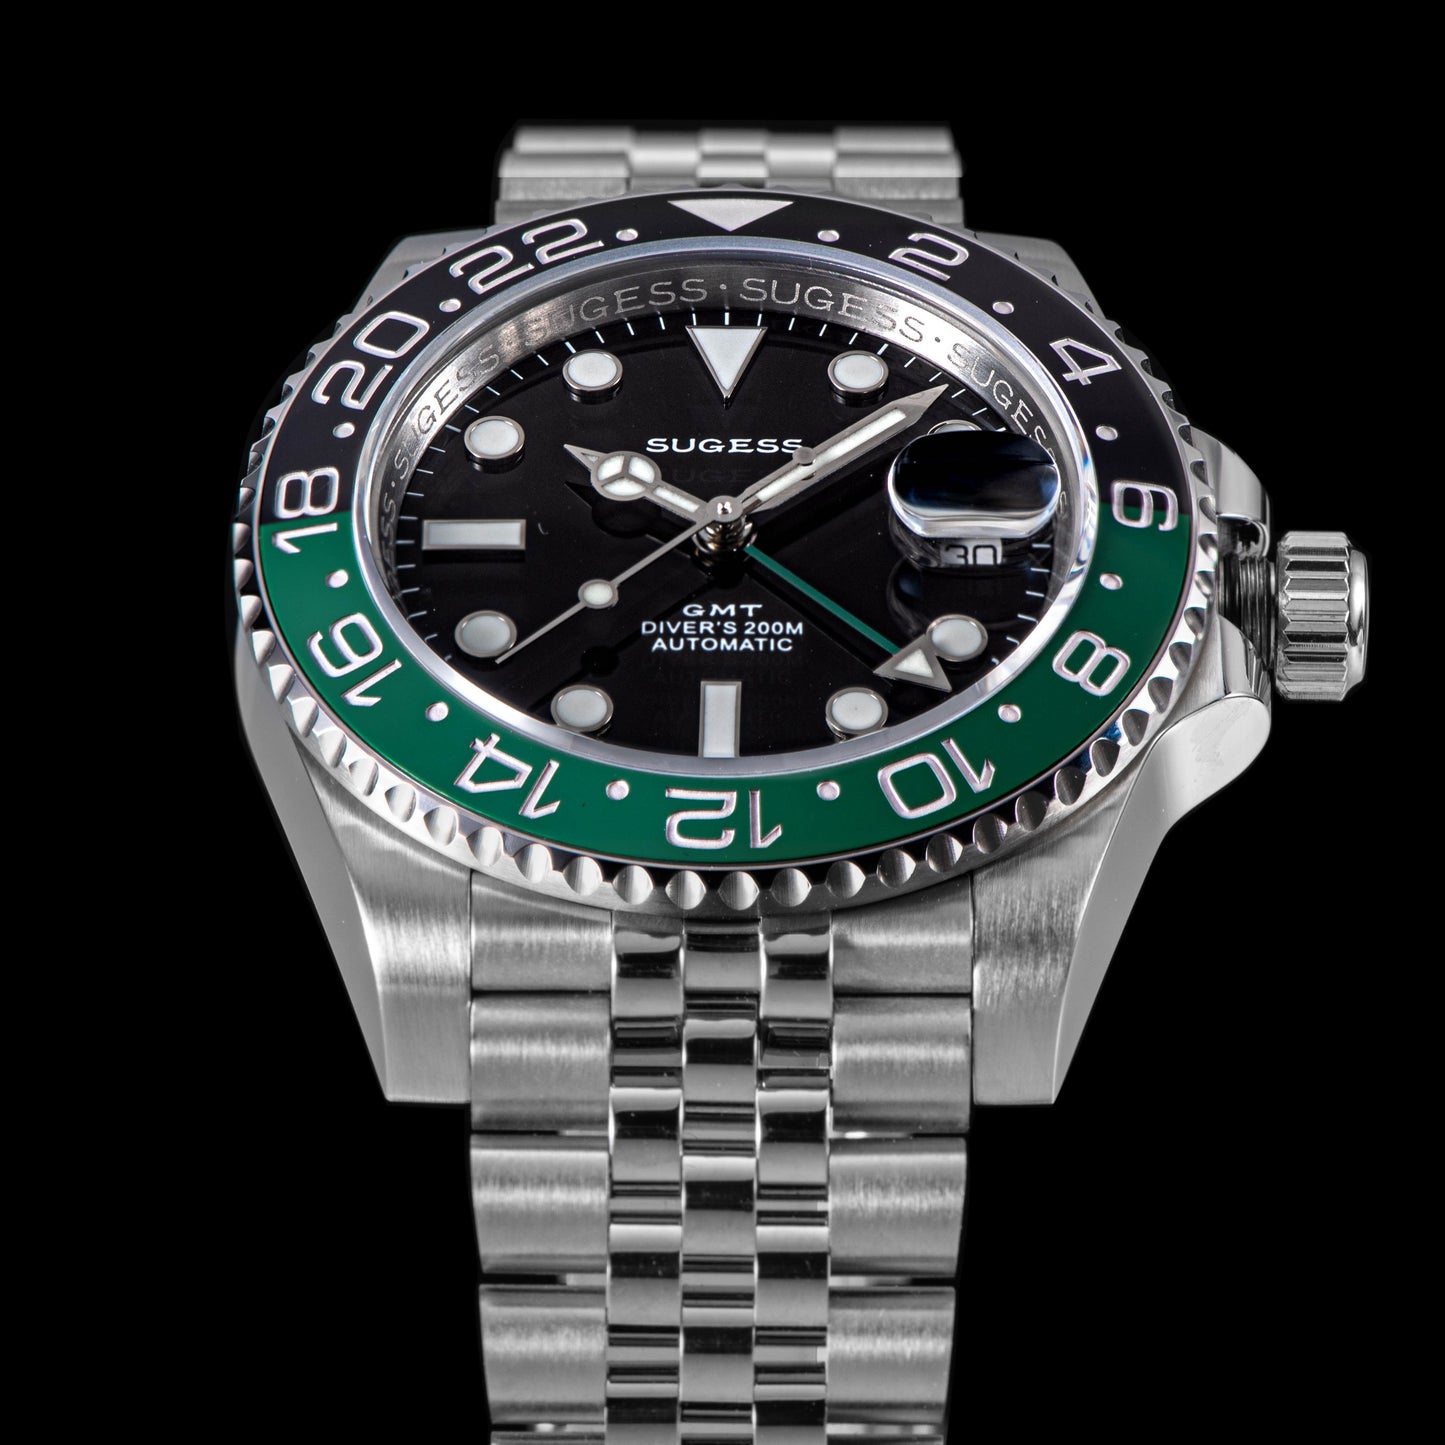 GMT DIVER'S SG116710LN Green Black Bezel Jubilee Bracelet